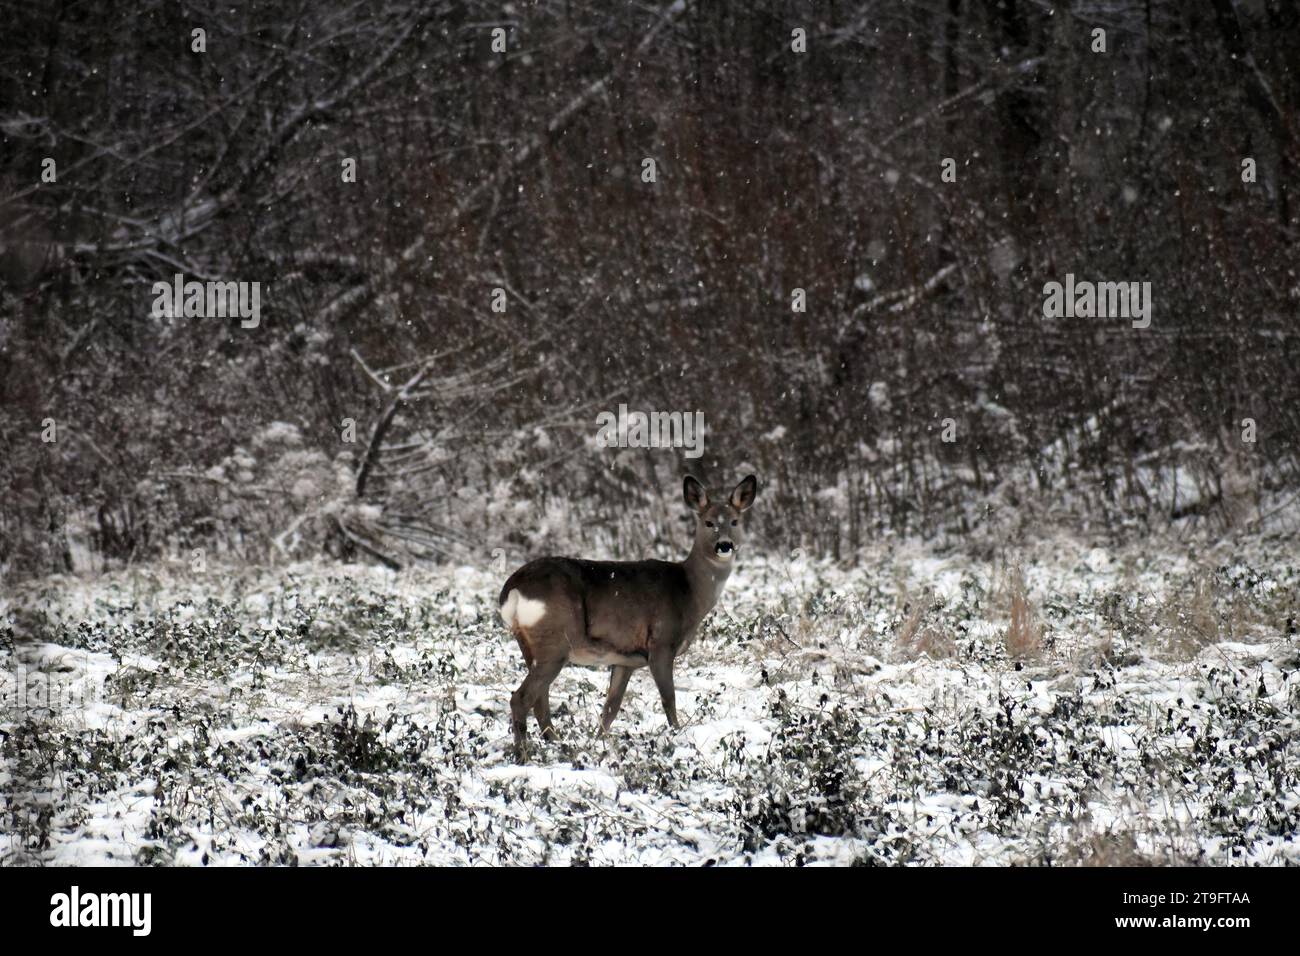 Cerf roux, Capreolus capreolus, debout dans un champ enneigé pendant les chutes de neige Banque D'Images